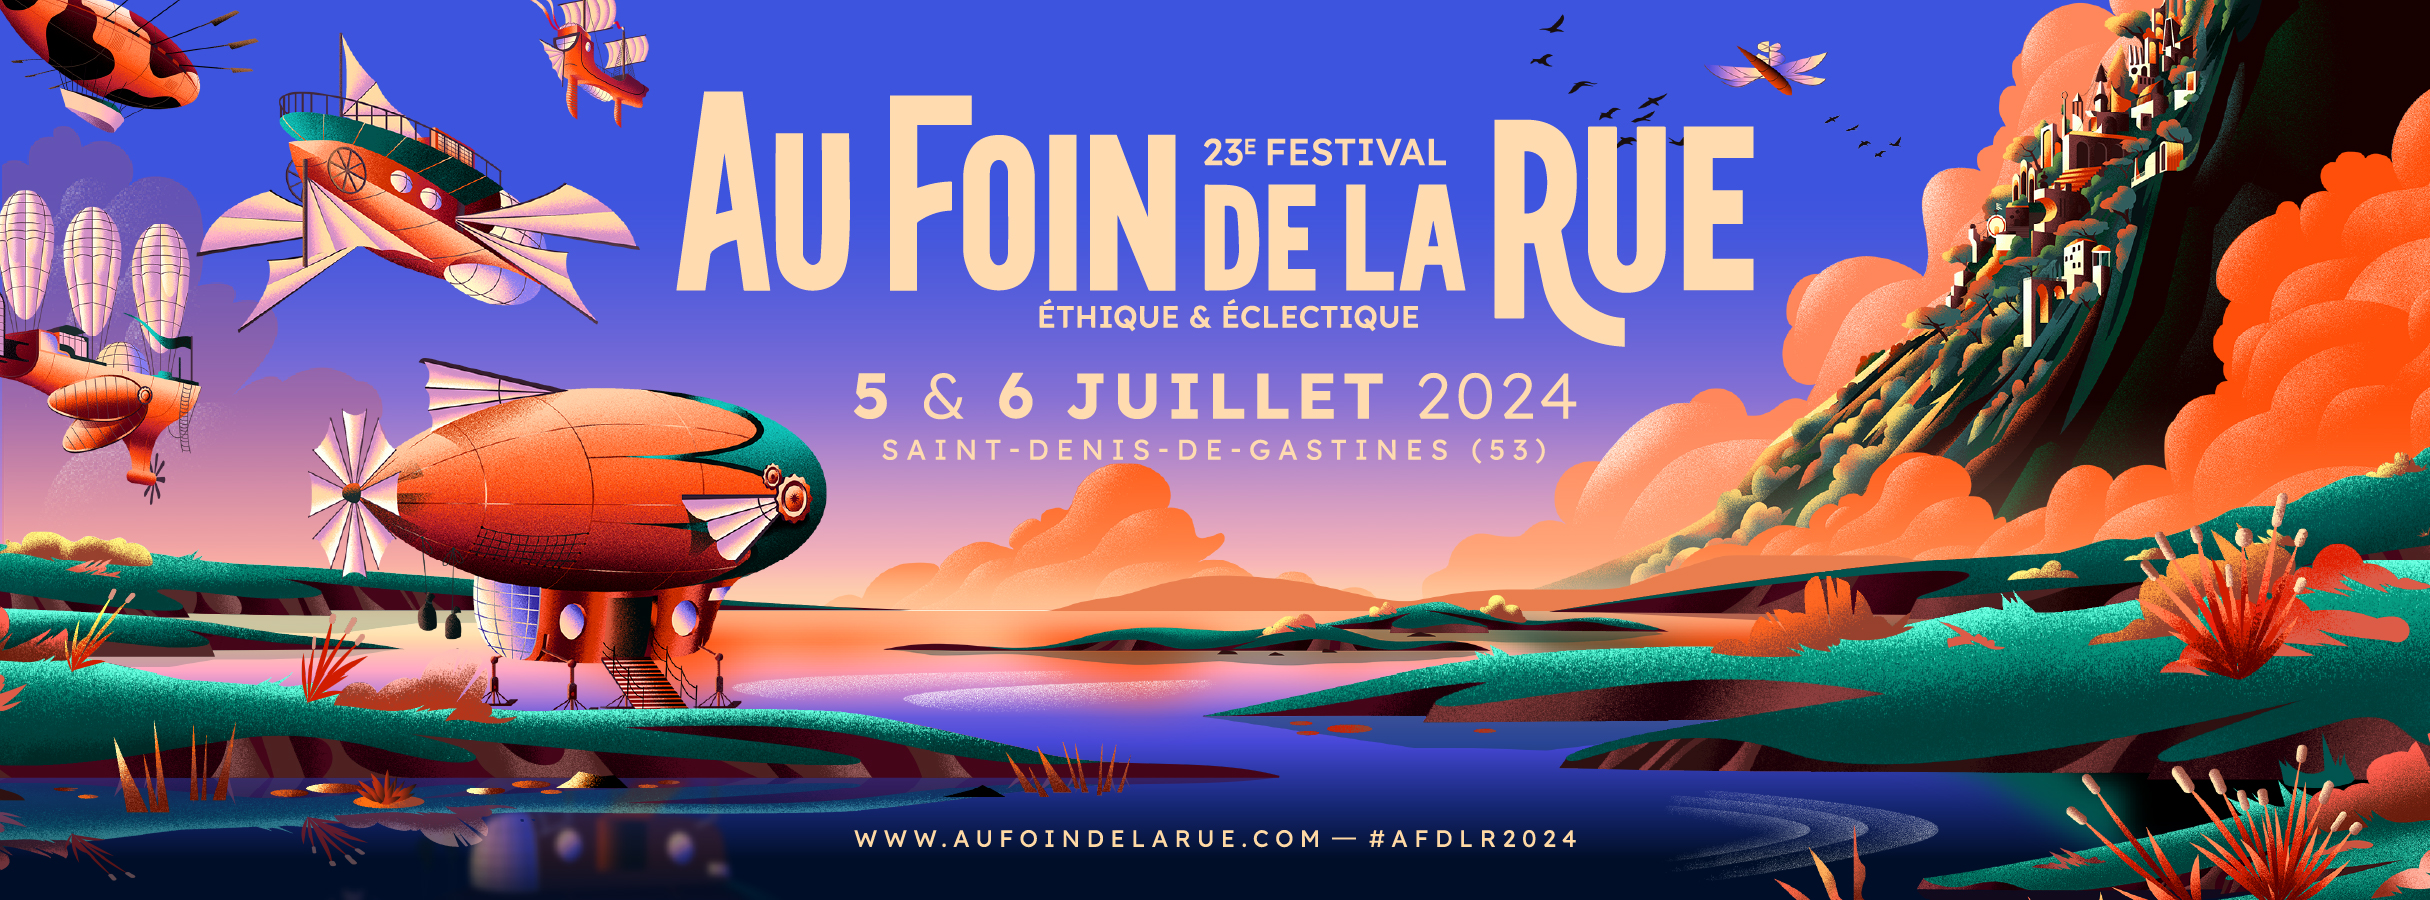 Festival Au Foin de la Rue – 5 & 6 juillet 2024